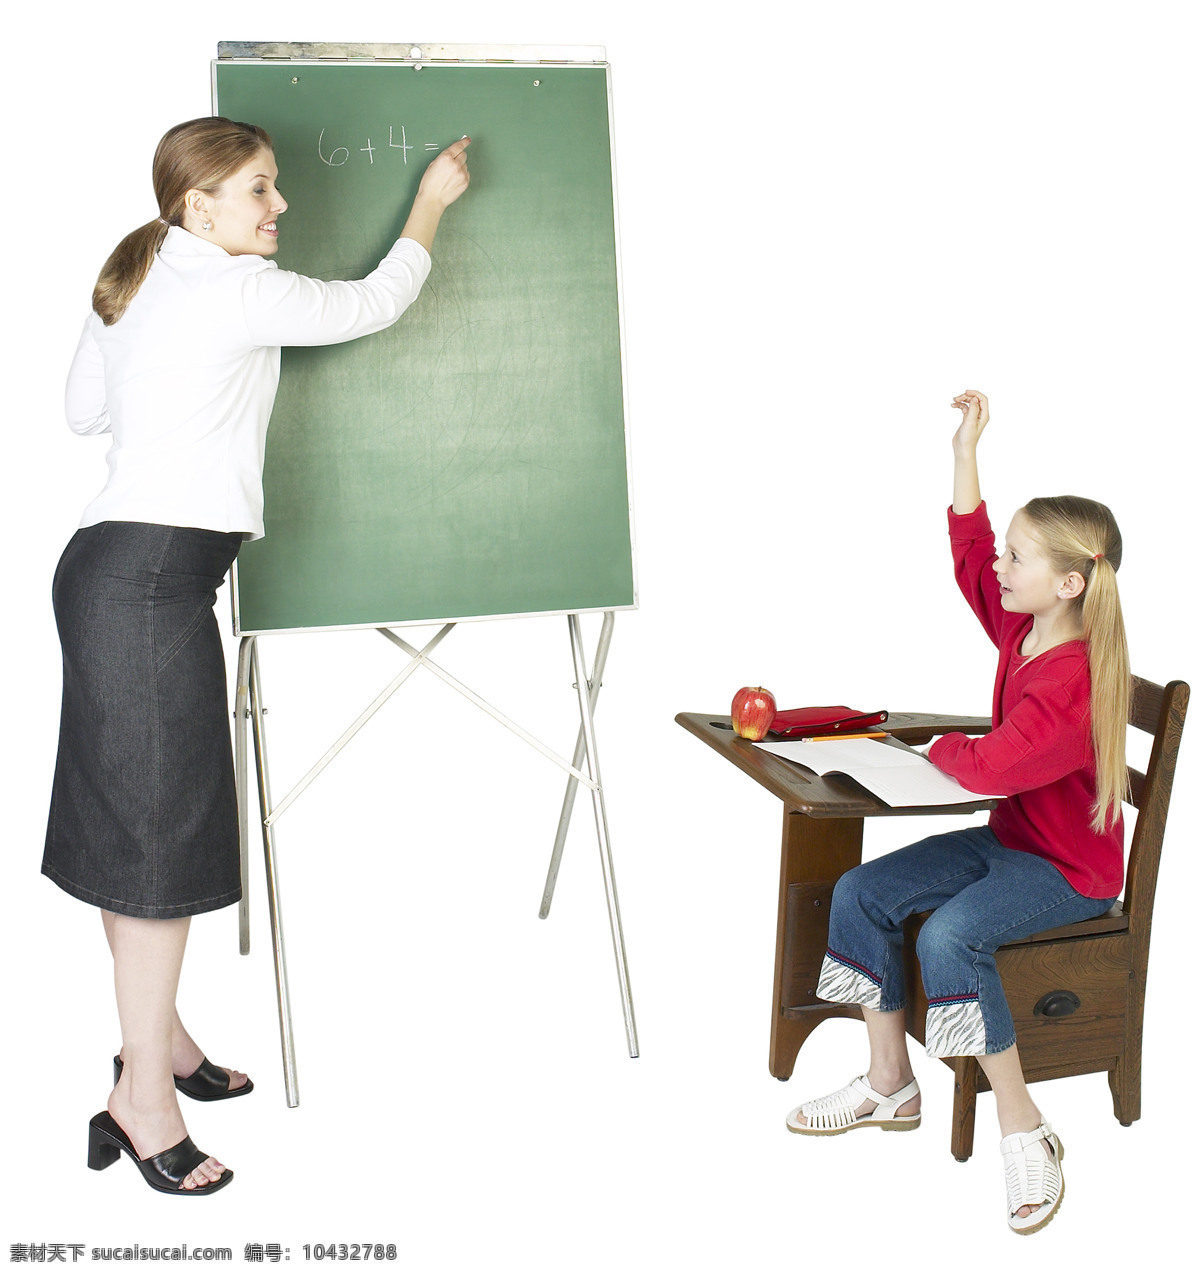 上课 举手 老师写字 黑板 学生举手 上课举手 红苹果 粉笔字 人物图库 职业人物 摄影图库